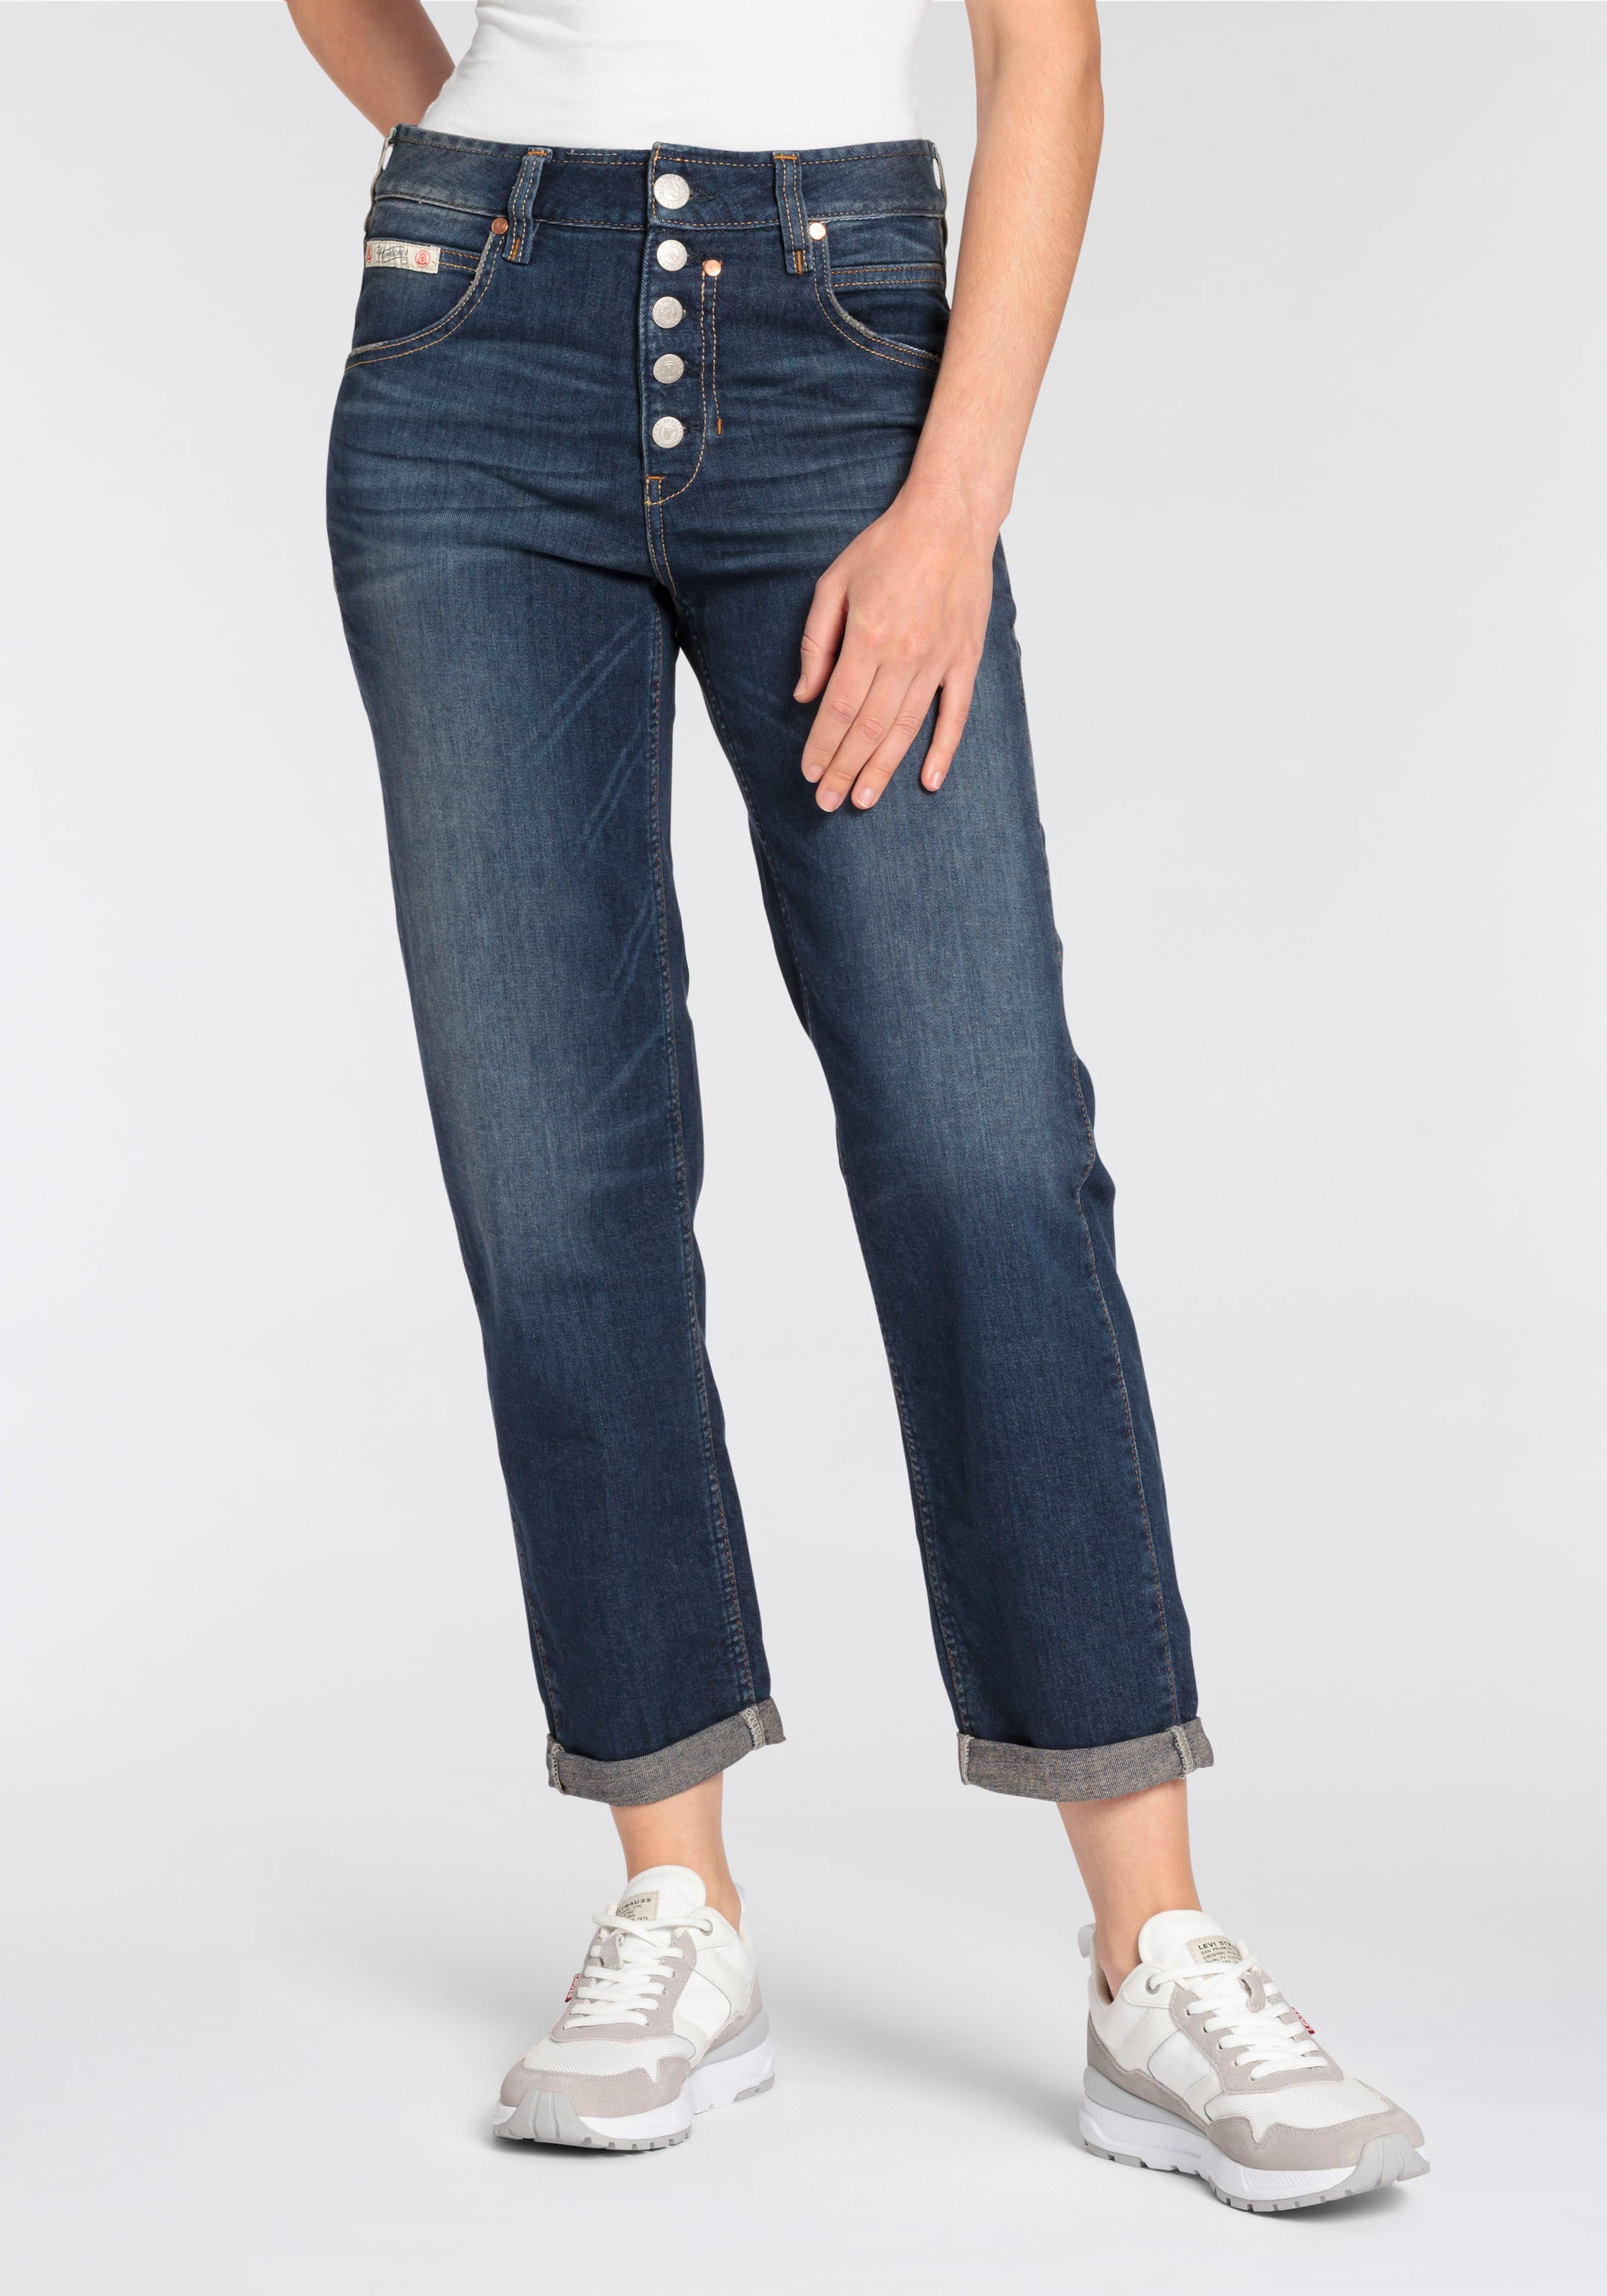 günstig ▻ Jeans Waist shoppen High